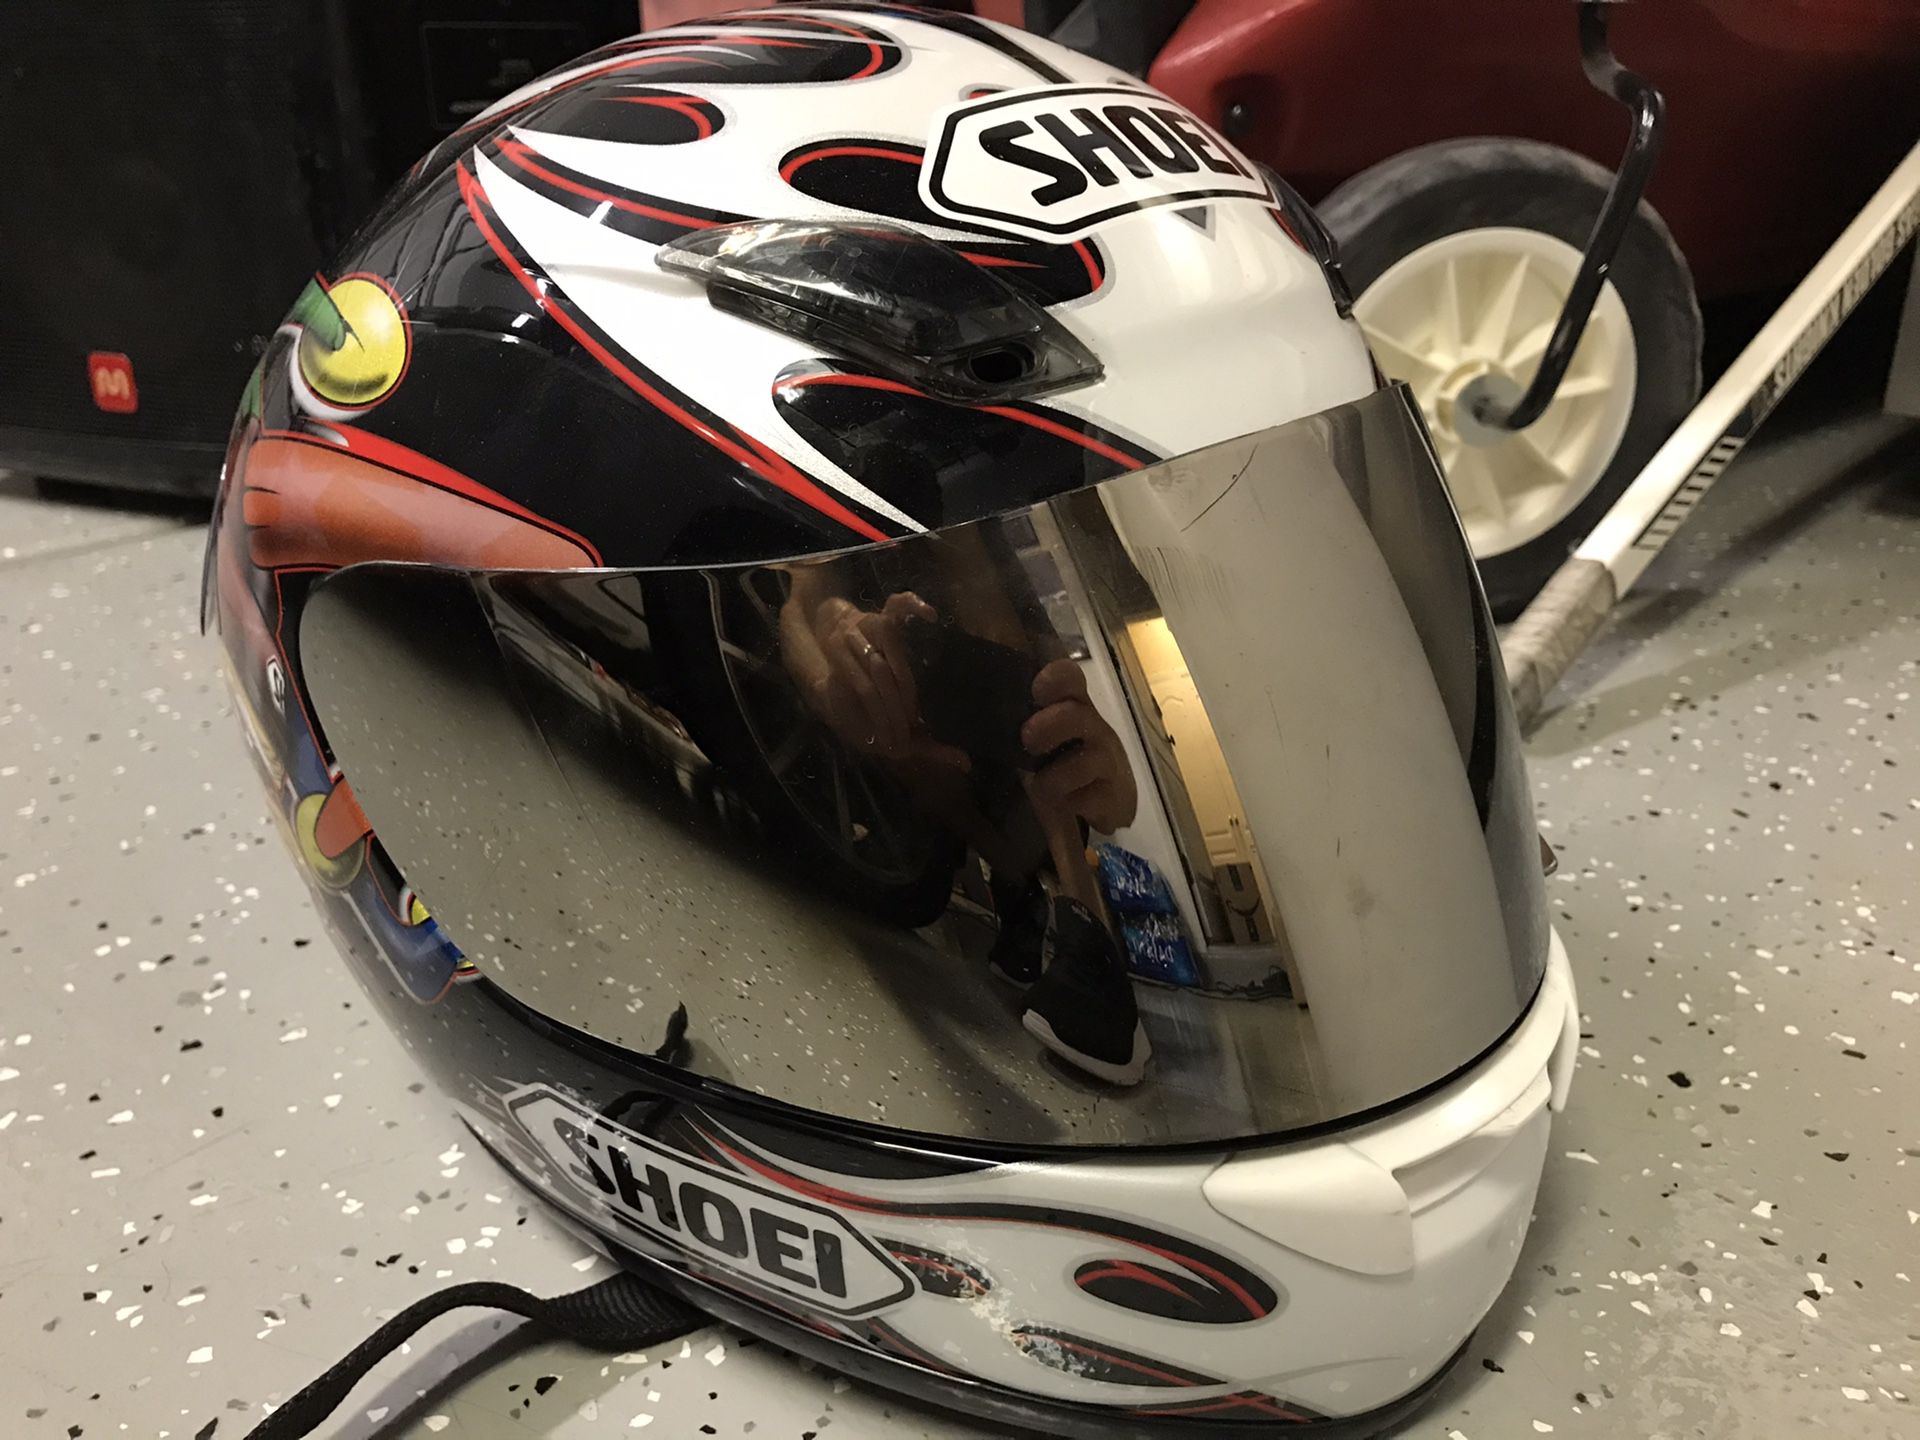 Shoei Motorcycle Helmet